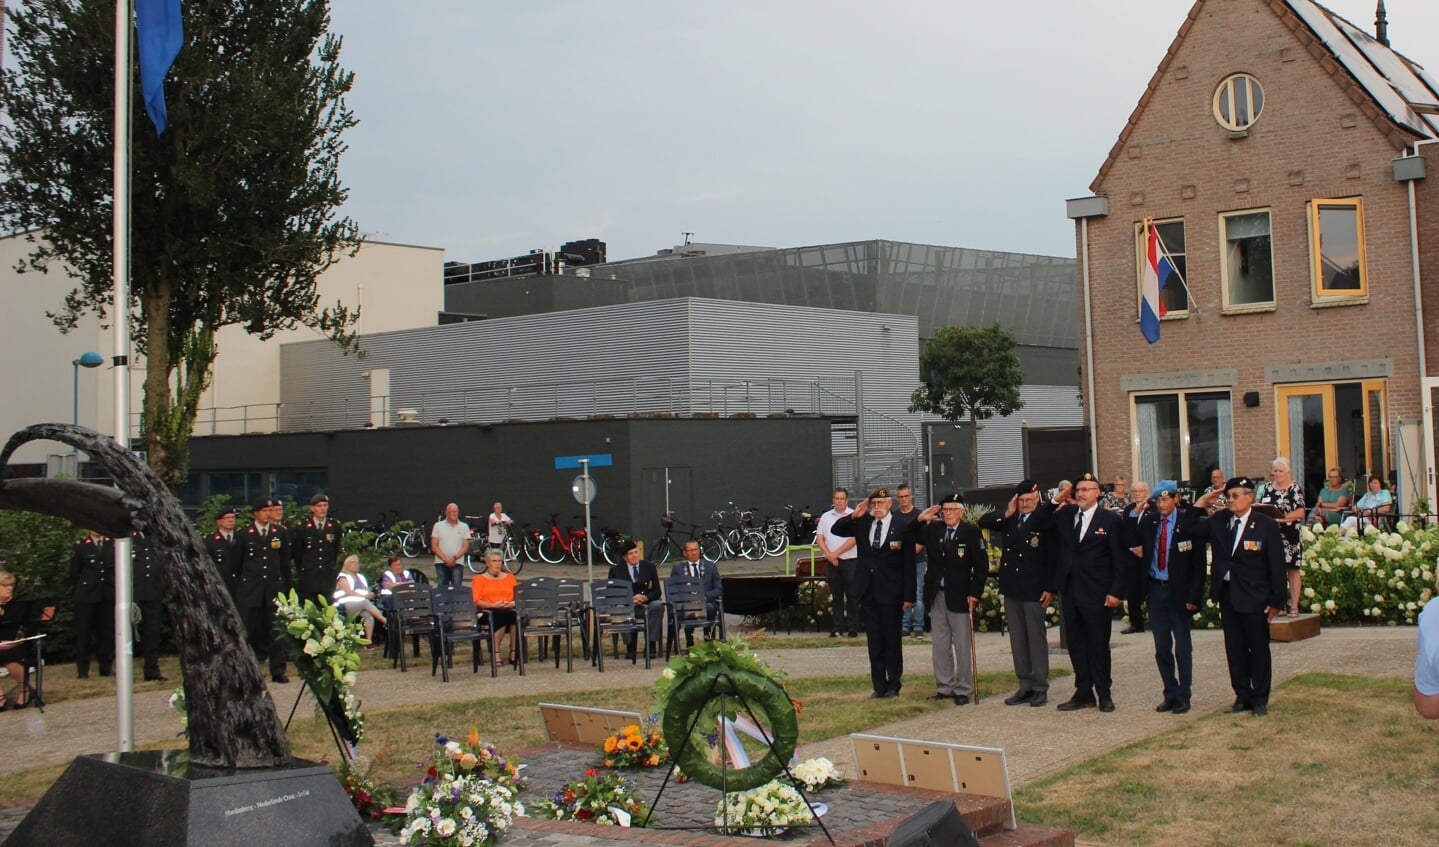 De erewacht tijdens de herdenking op 15 augustus